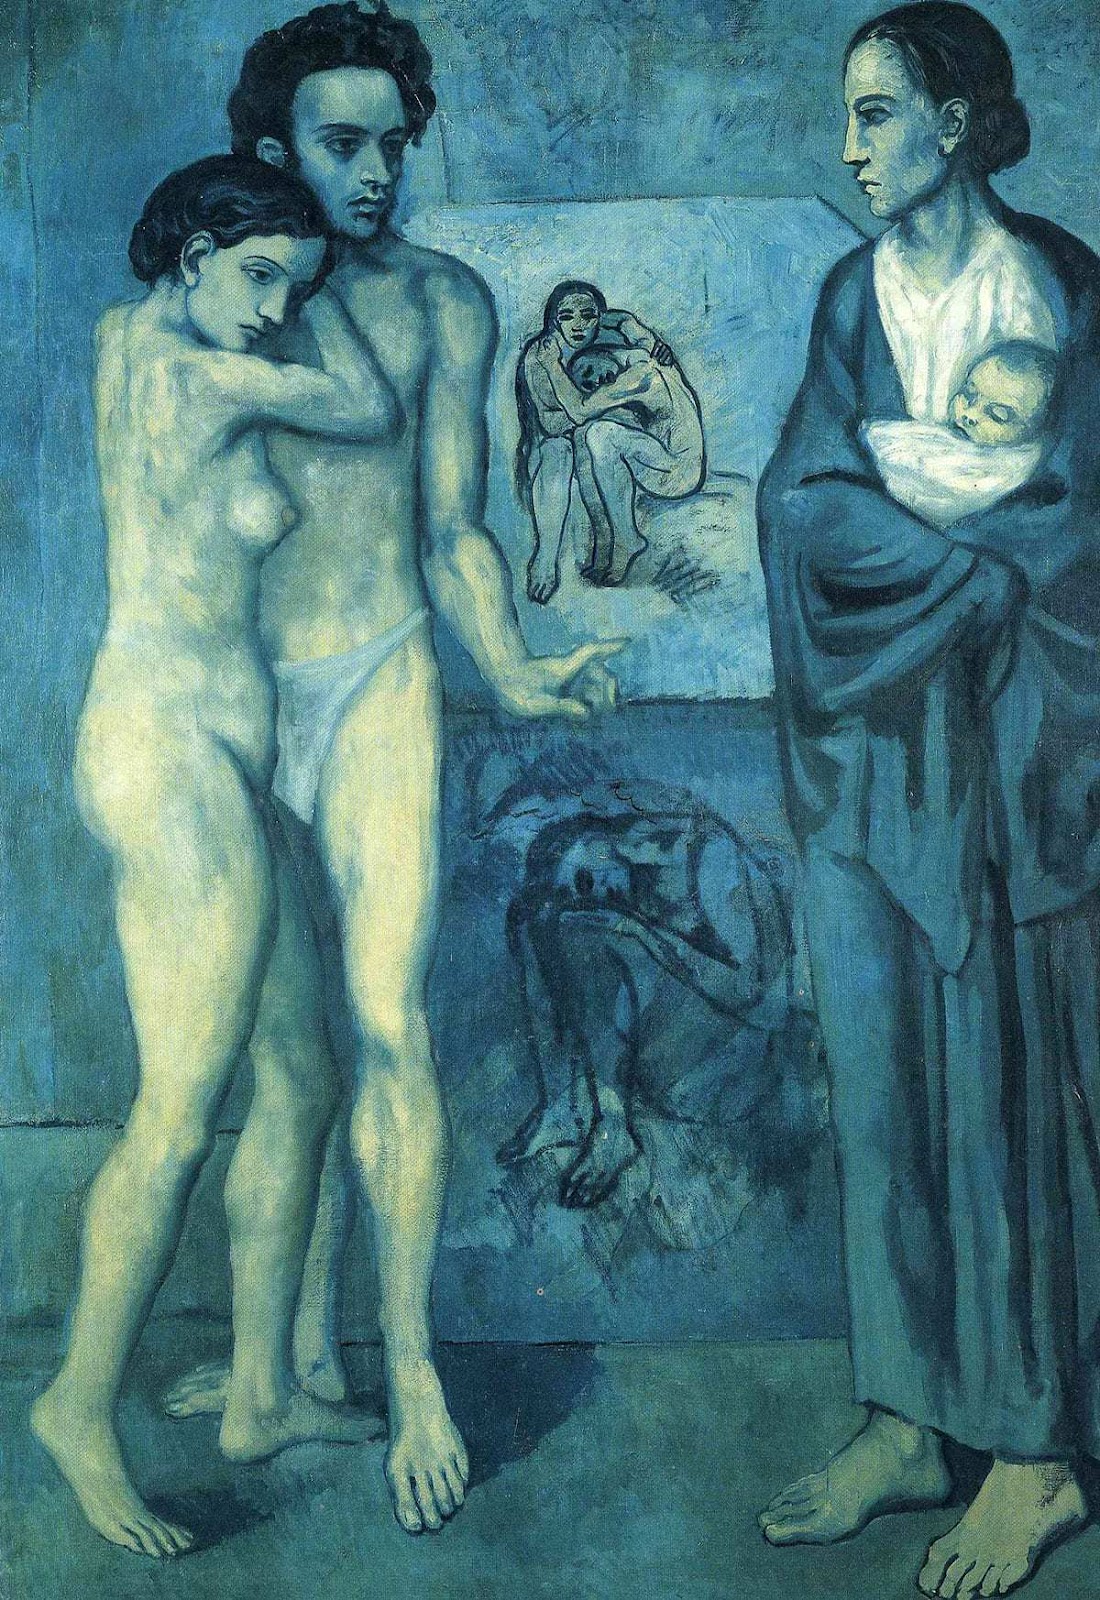 La Vie, 1903 by Pablo Picasso